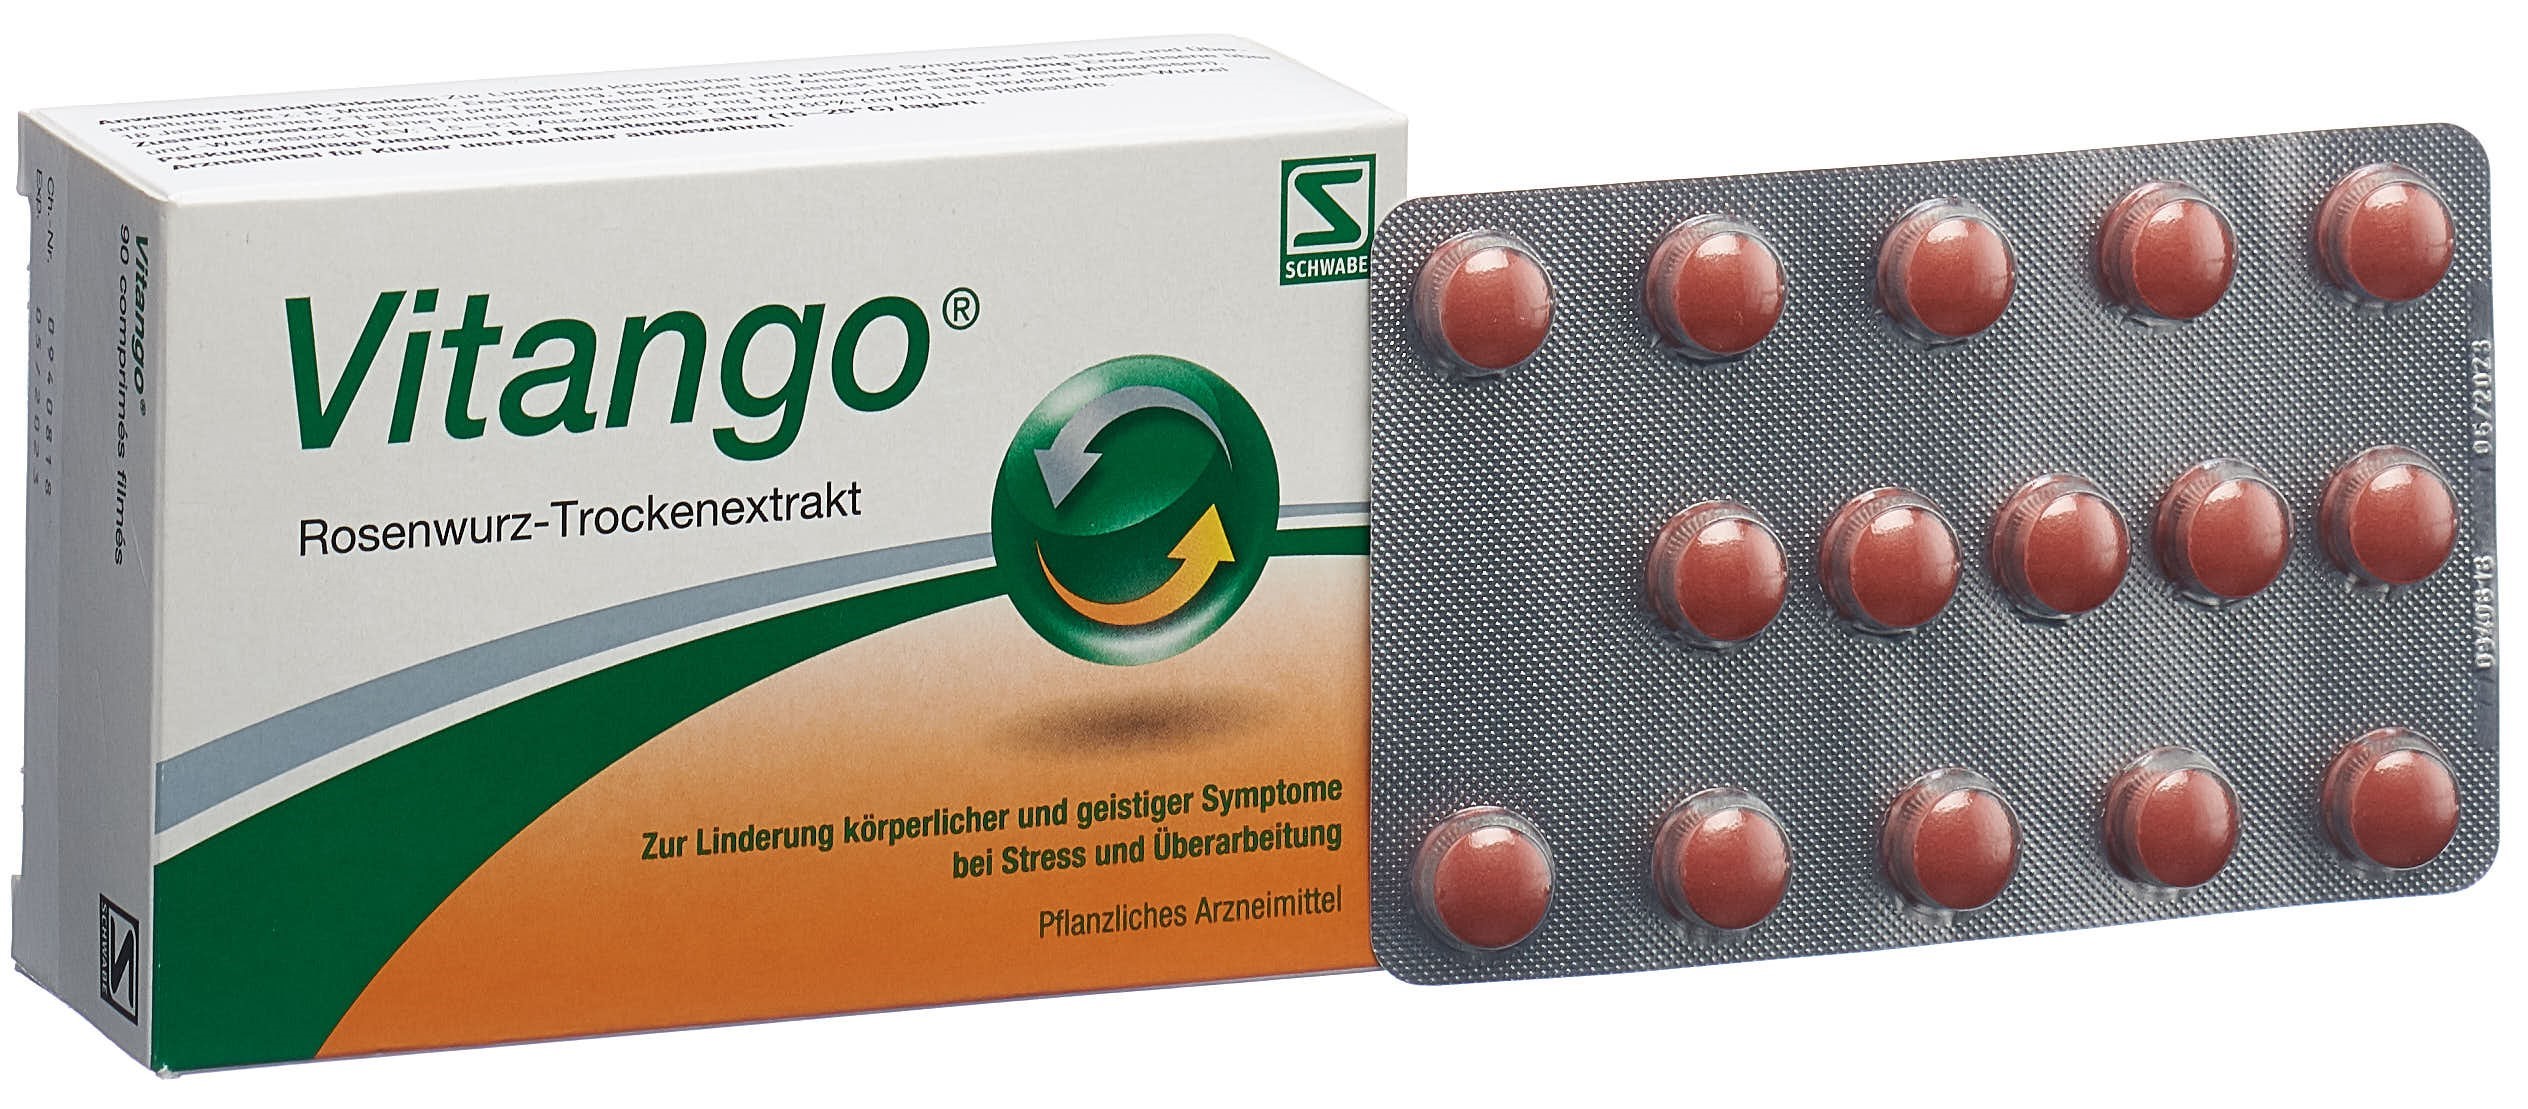 VITANGO Filmtabl 200 mg 90 Stk